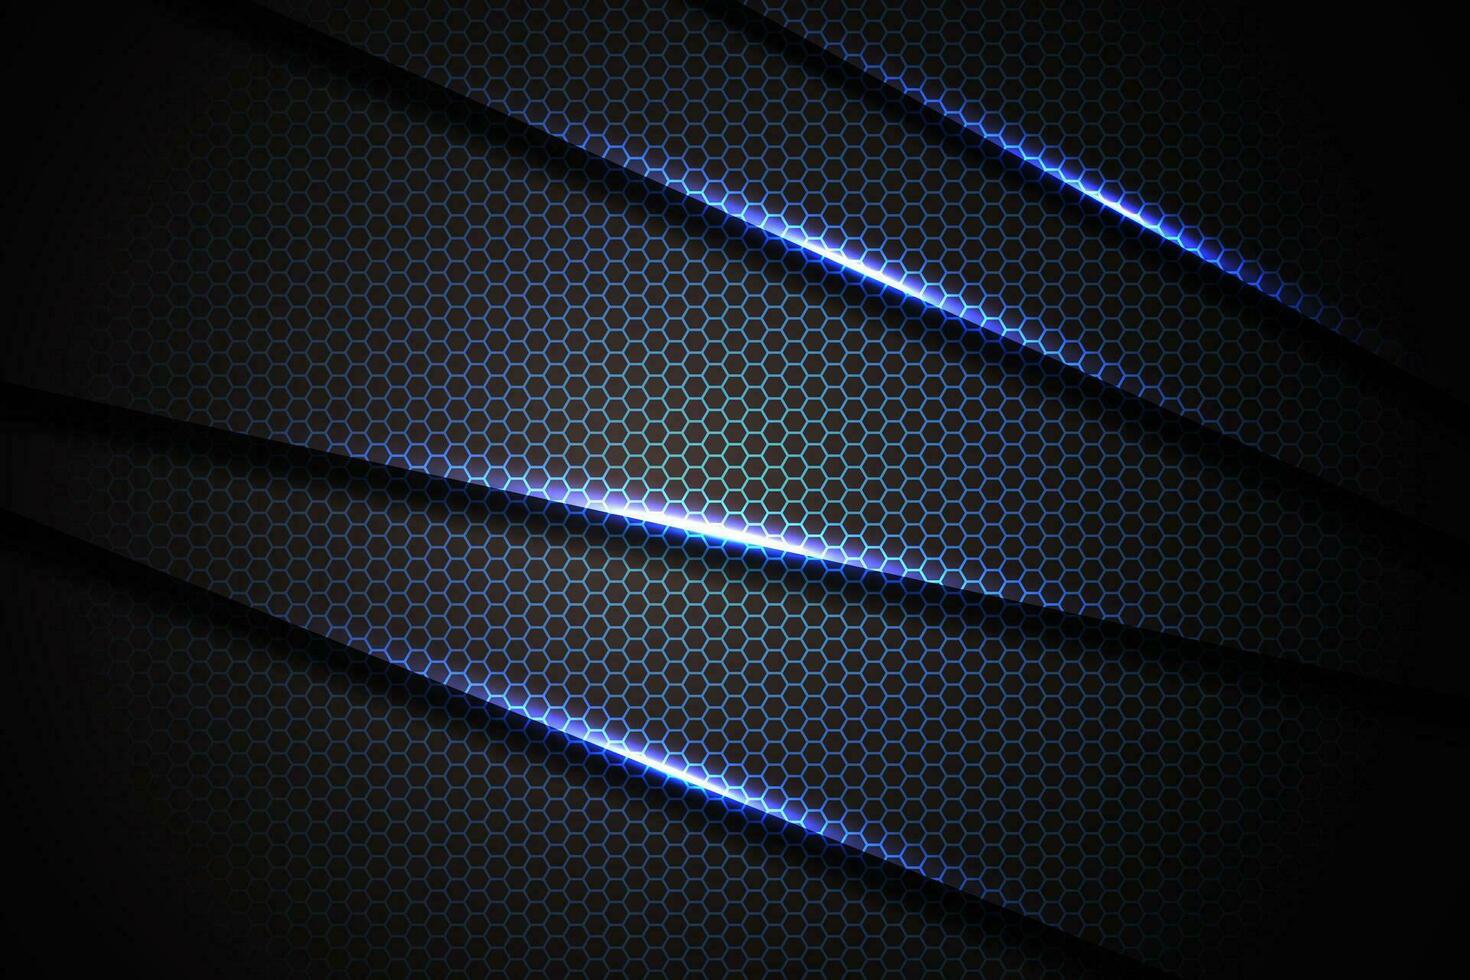 triángulo de barra de luz azul abstracto en negro con diseño de malla hexagonal ilustración de vector de fondo de tecnología futurista de lujo moderno.